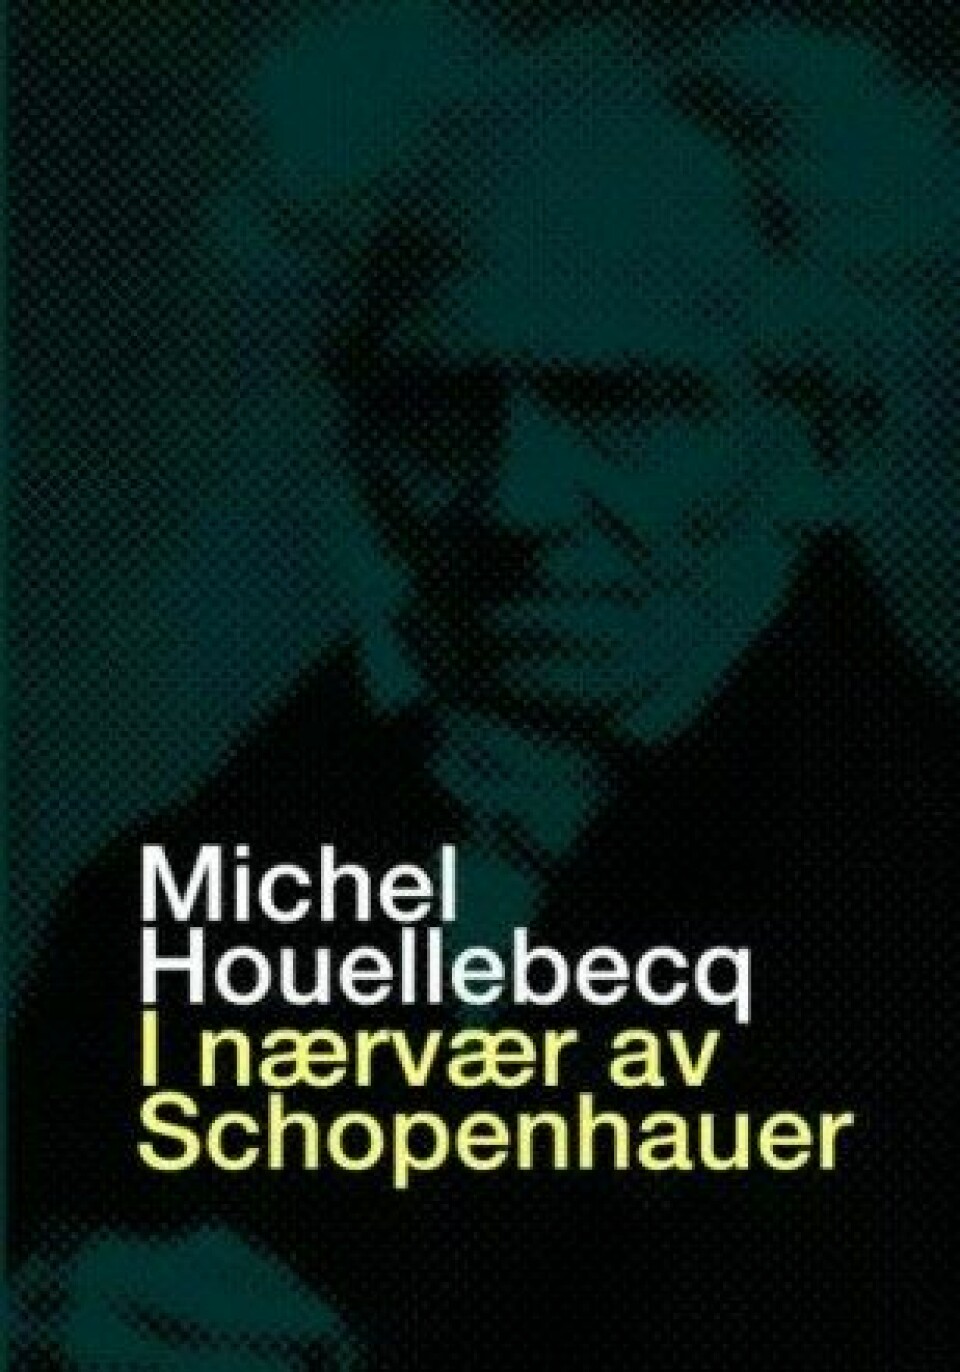 I nærvær av Schopenhauer, Solum Bokvennen, 2020